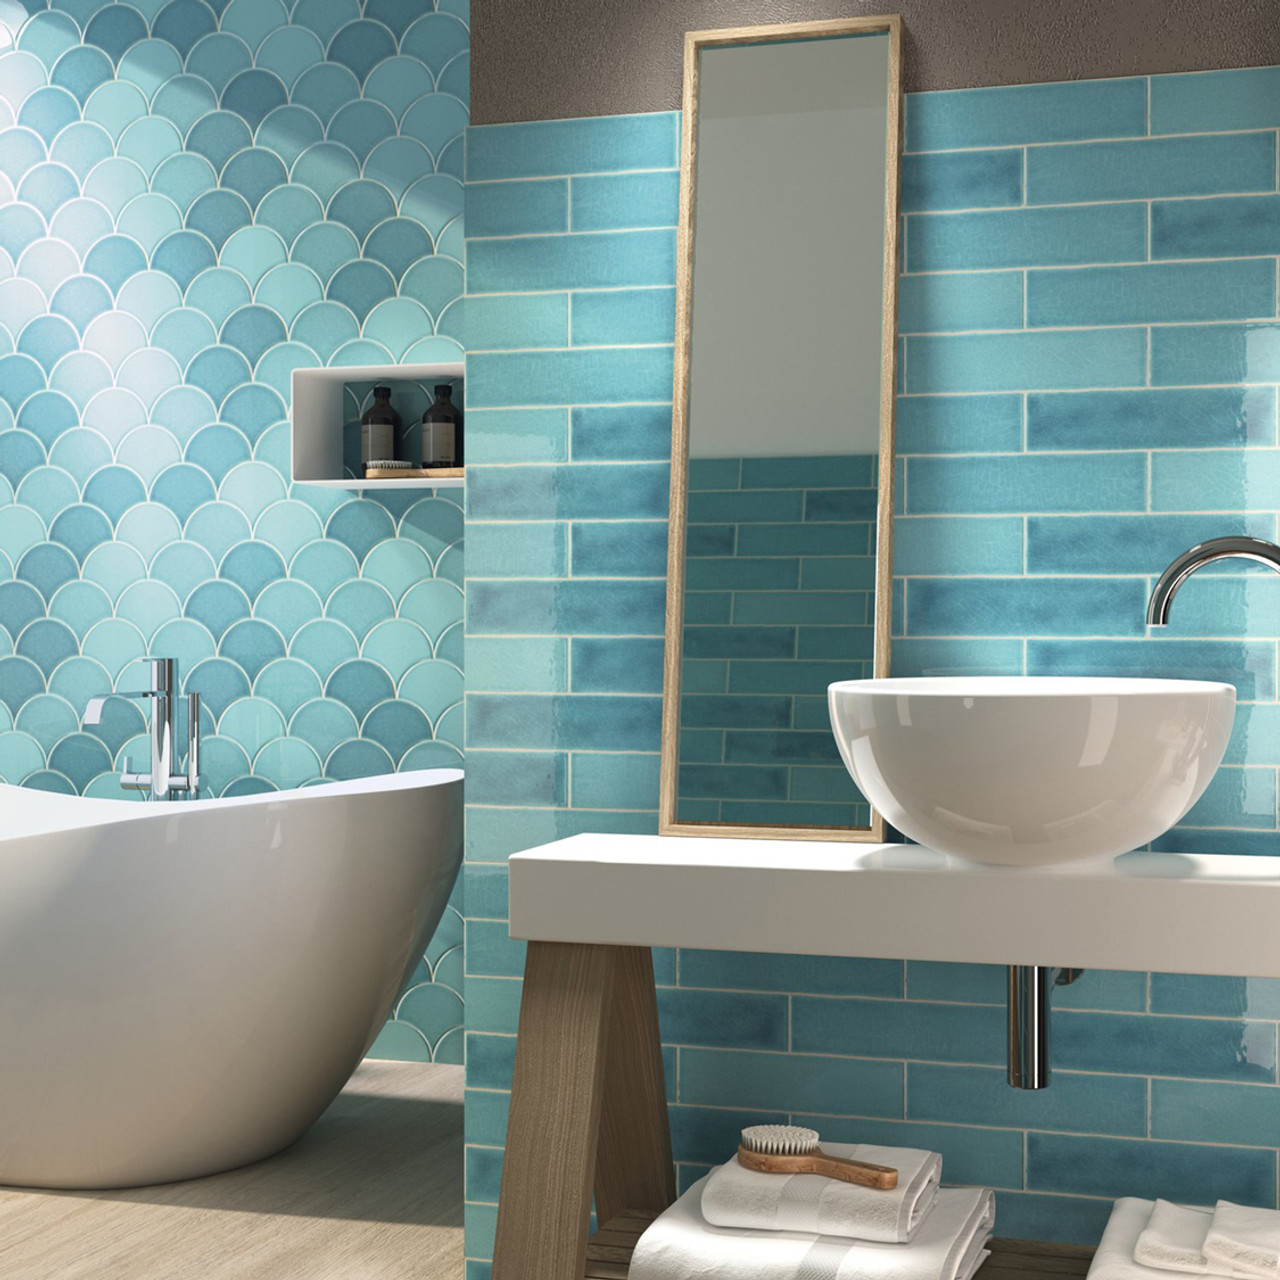 cover-the-walls-in-aqua-blue-tiling